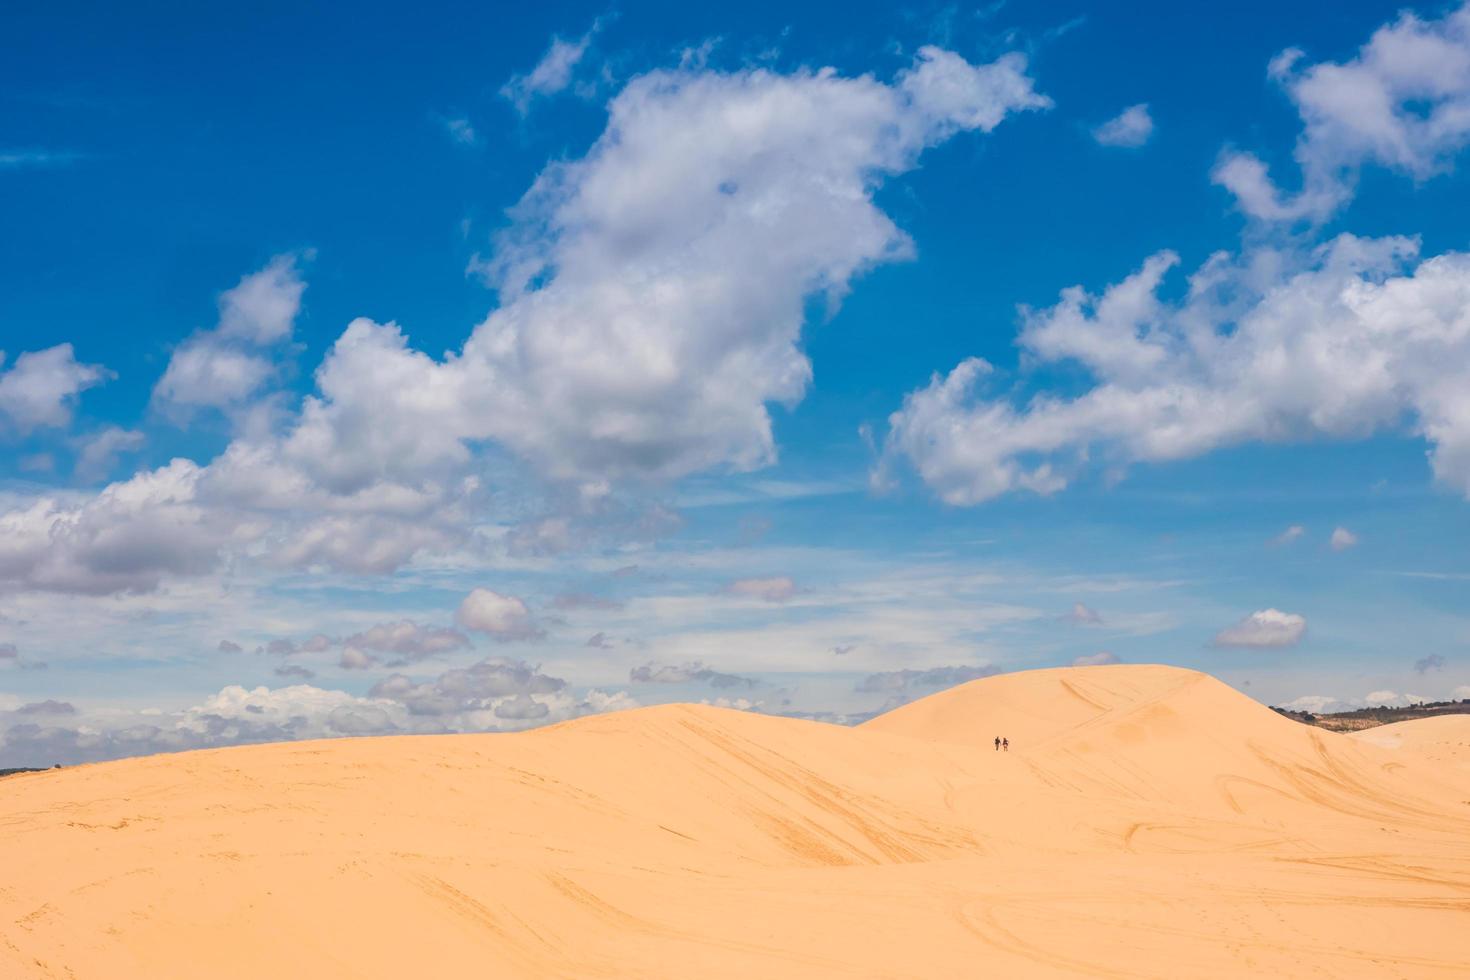 dunes de sable jaune à mui ne est une destination touristique populaire du vietnam photo